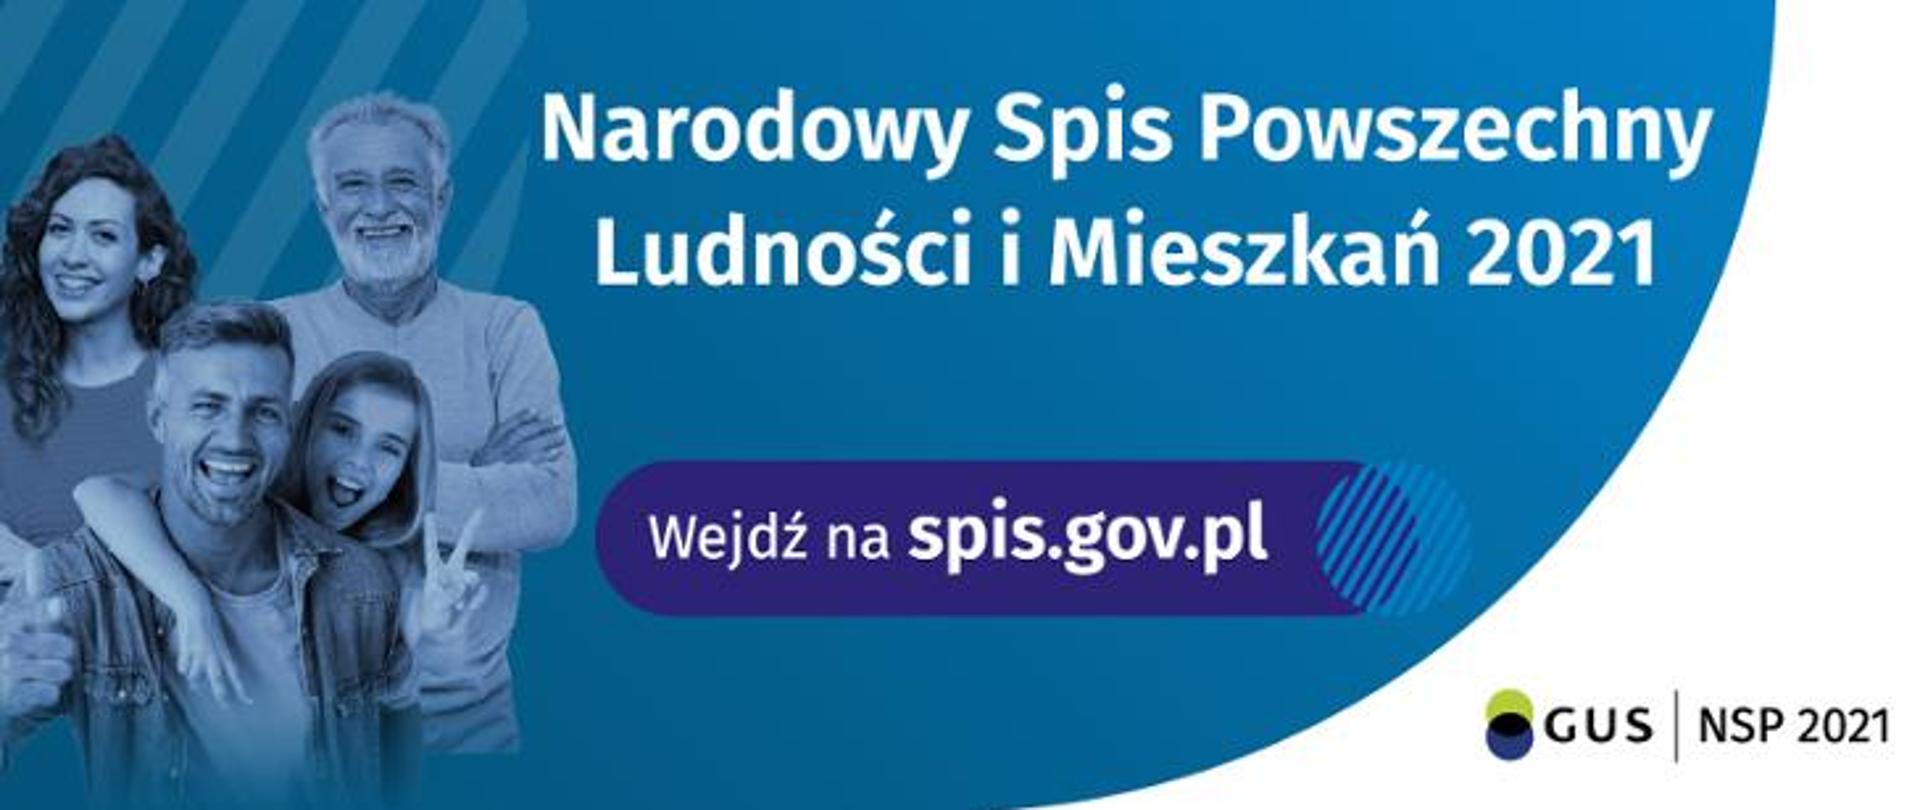 Narodowy Spis Powszechny Ludności i Mieszkań 2021 (wejdz na stronę spis.gov.pl)